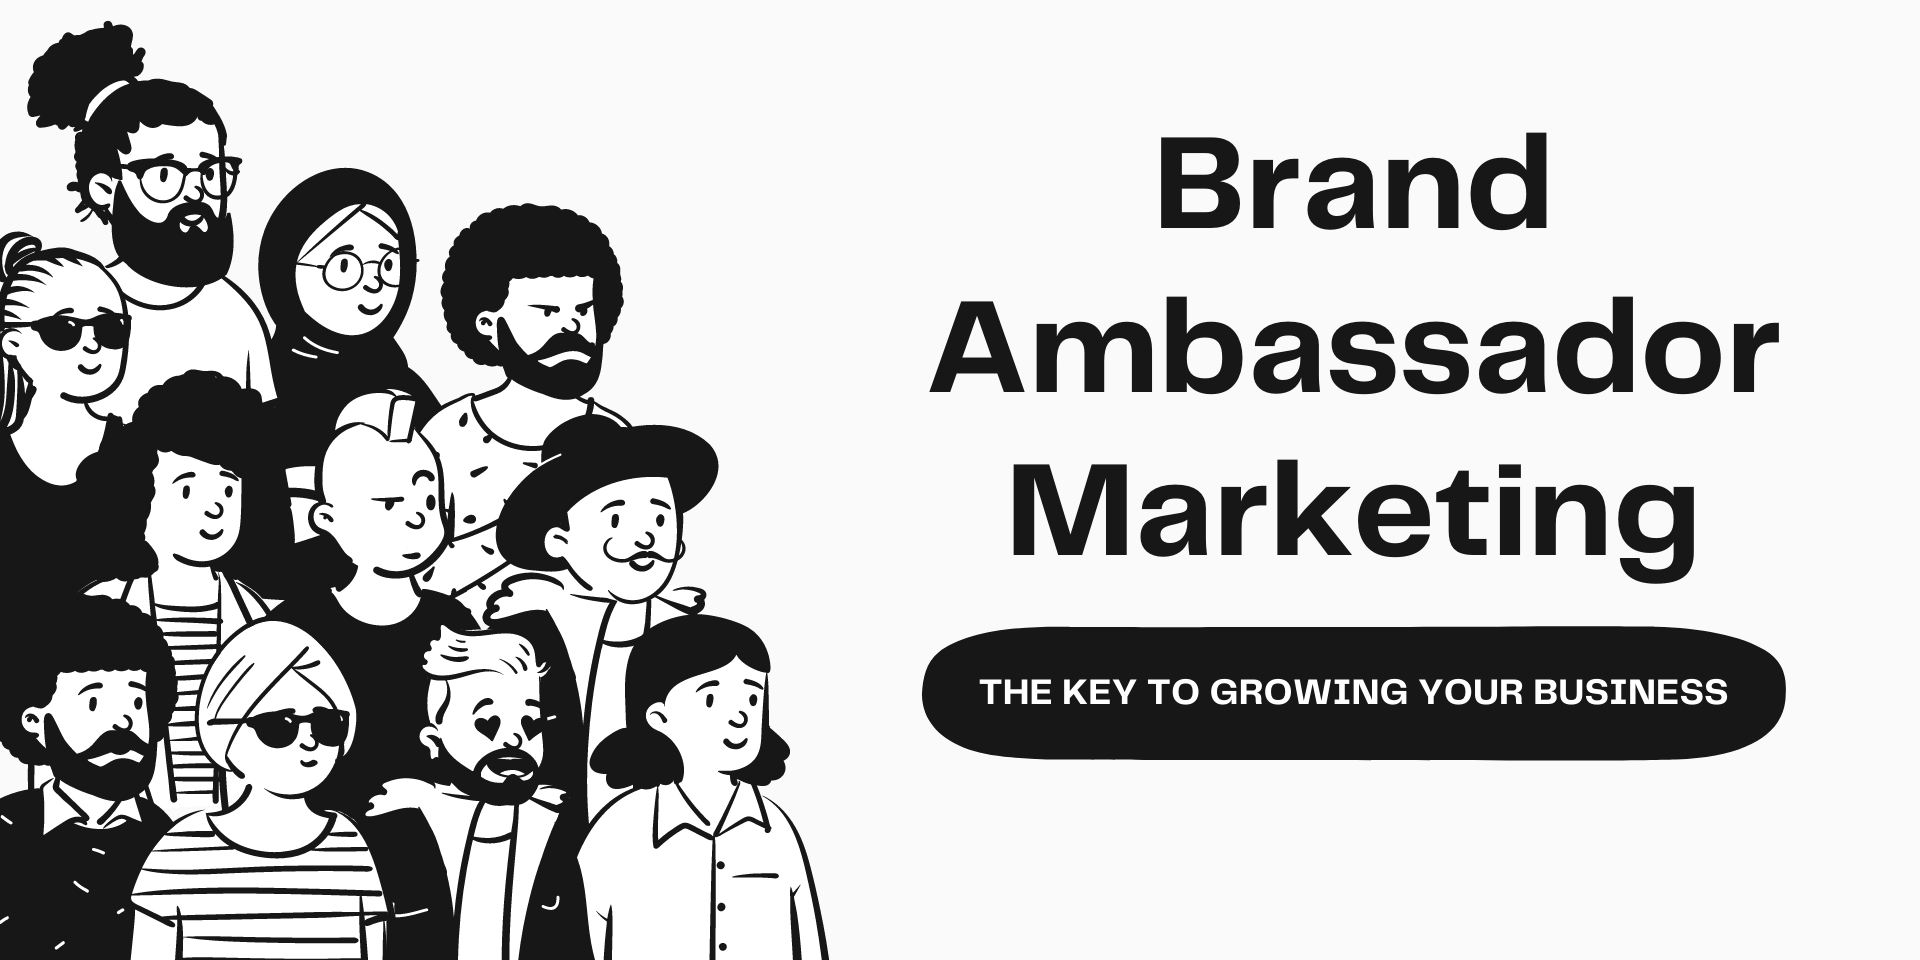 Brand Ambassador Marketing